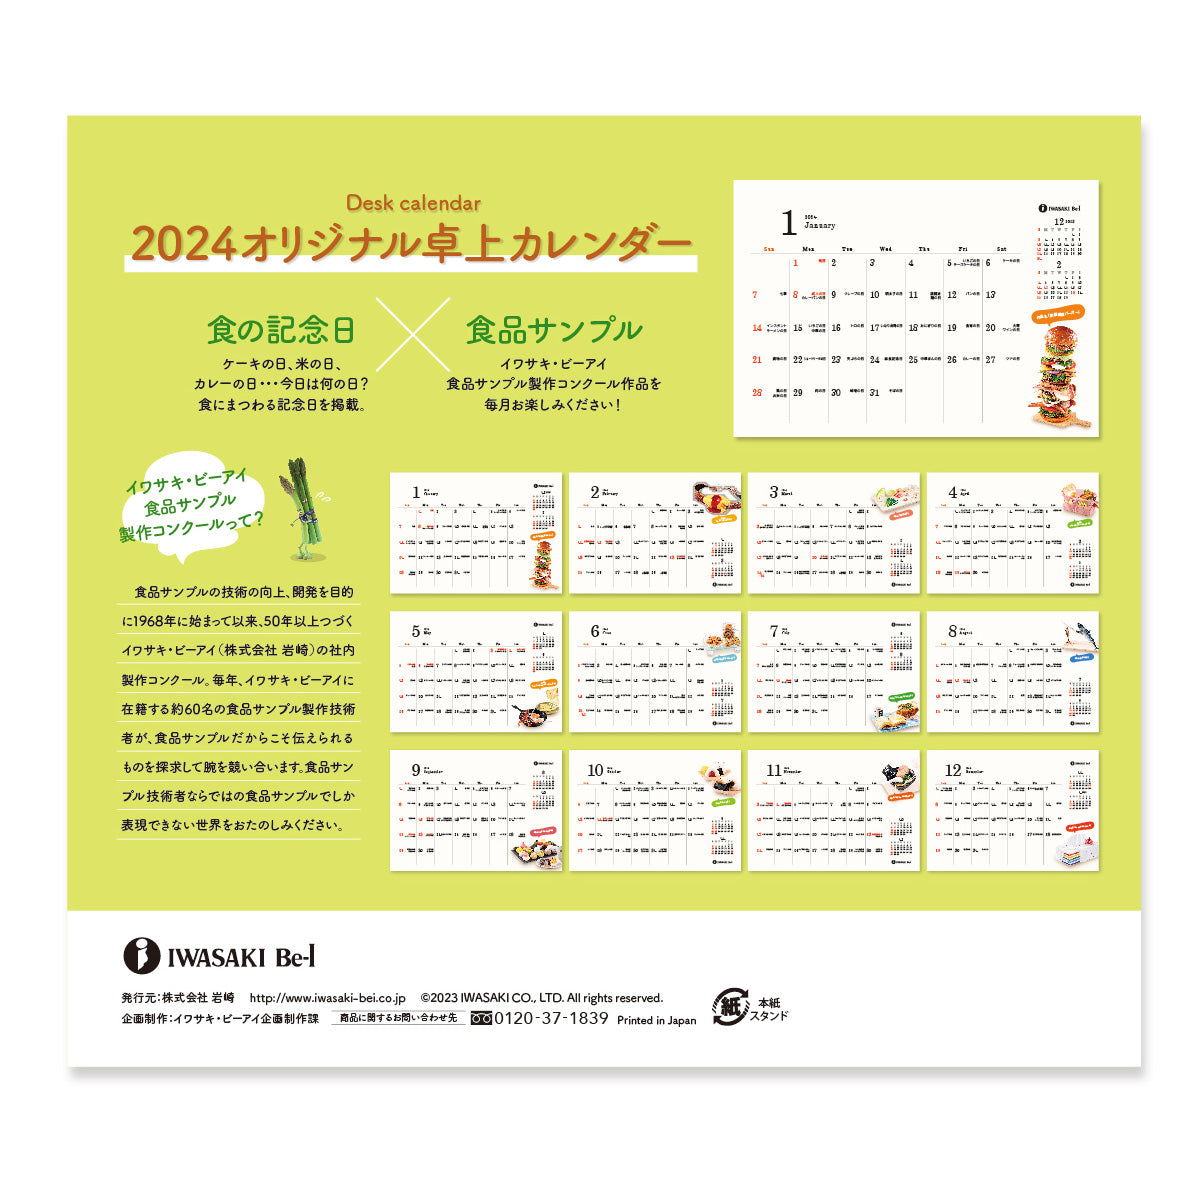 【数量限定】イワサキ・ビーアイ 2024オリジナル卓上カレンダー